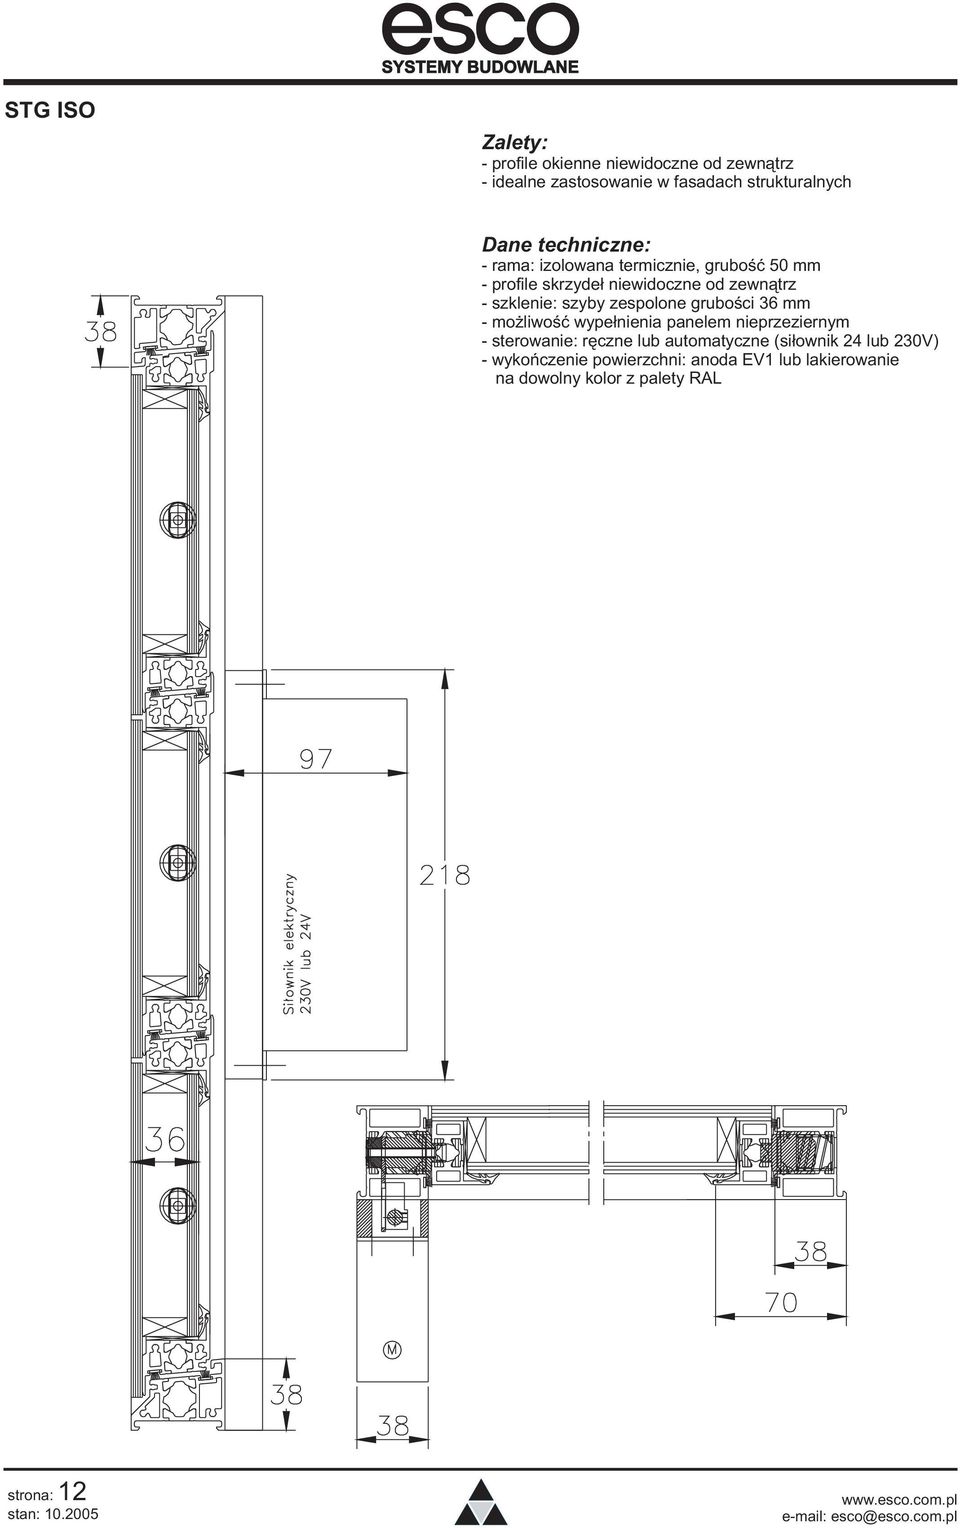 szyby zespolone gruboœci 36 mm - mo liwoœæ wype³nienia panelem nieprzeziernym - sterowanie: rêczne lub